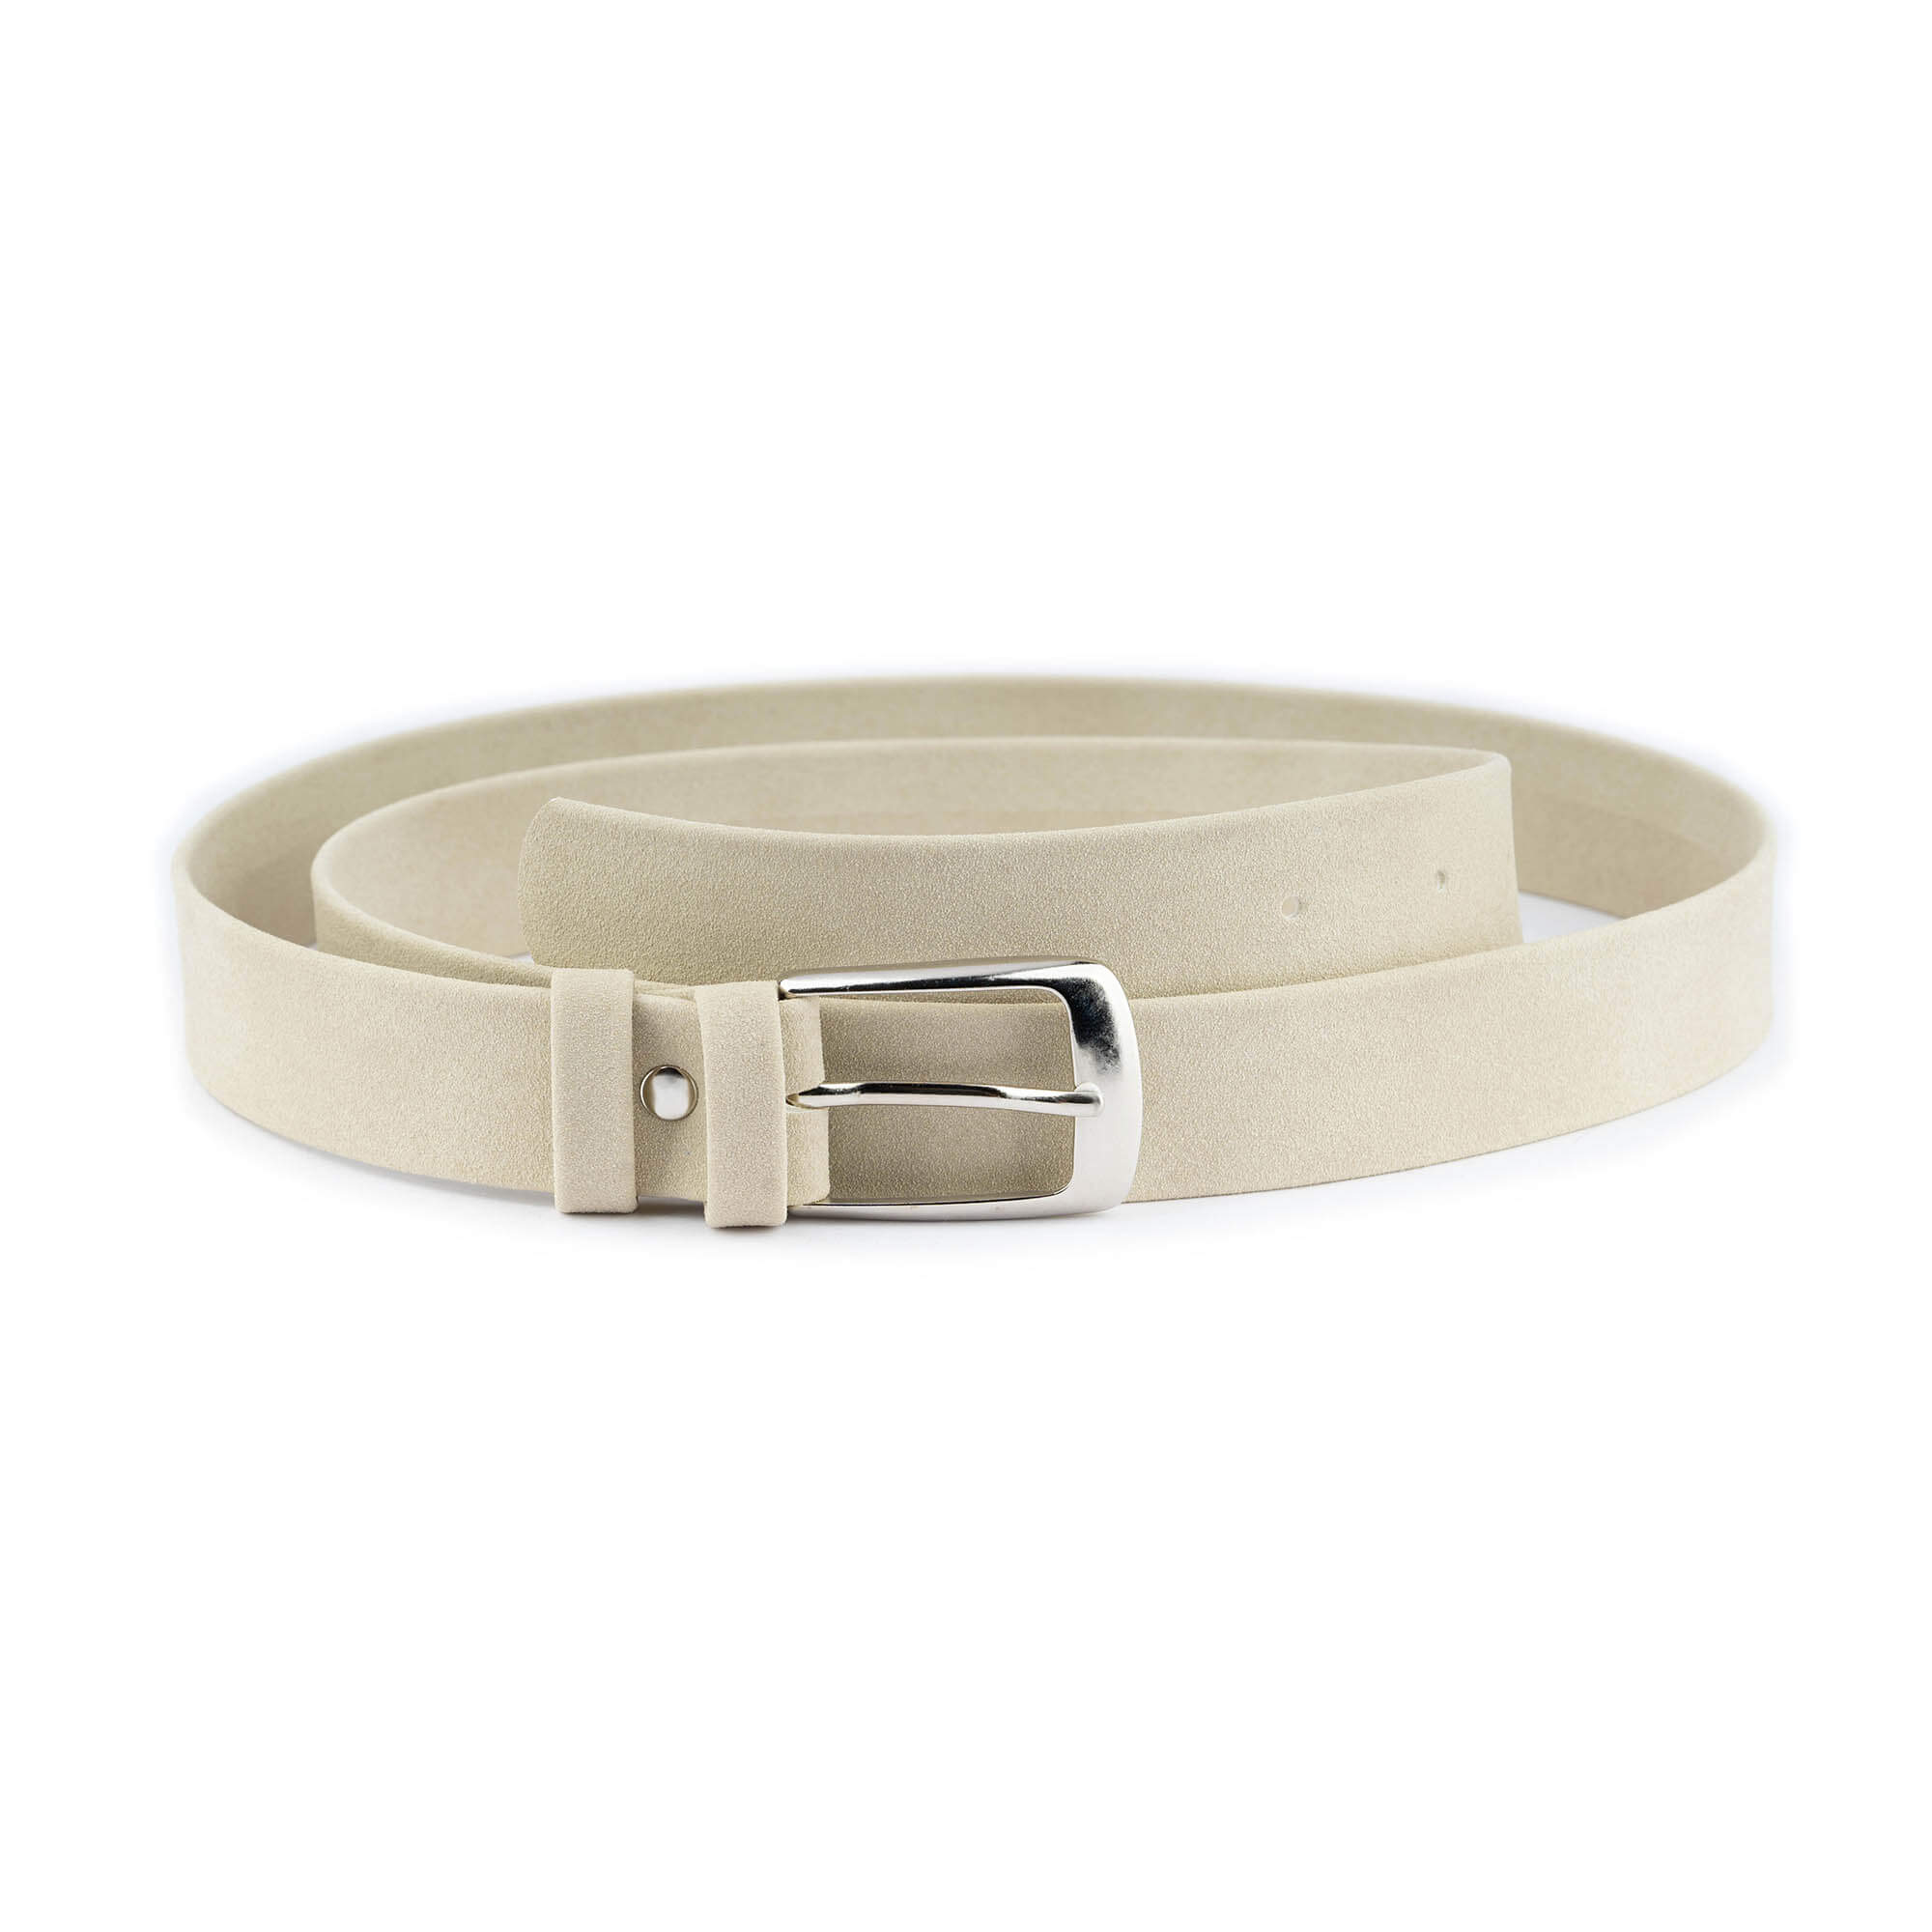 Buy White Velvet Belt For Women - LeatherBeltsOnline.com